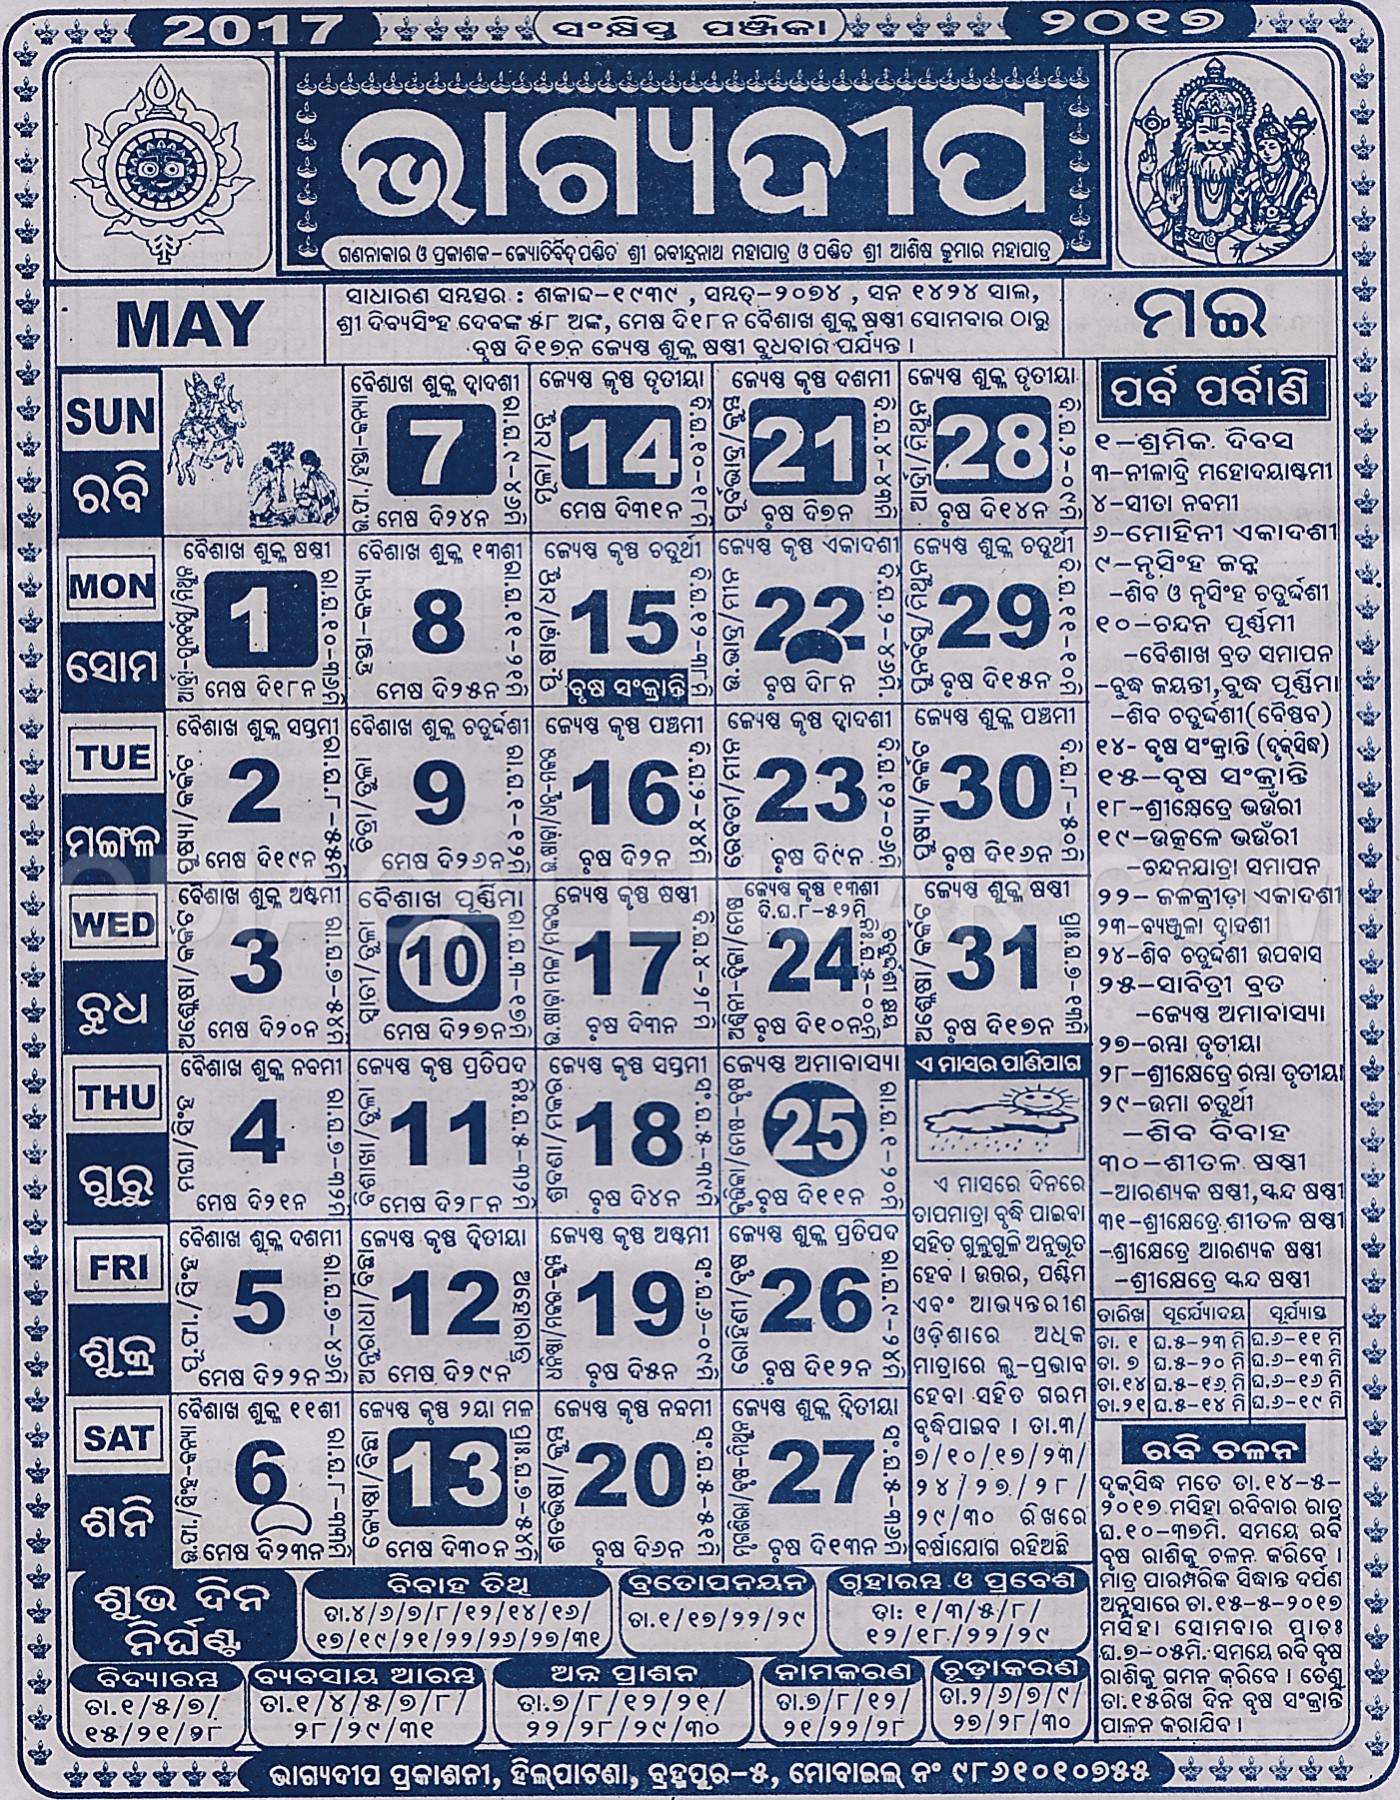 Bhagyadeep Calendar may 2017